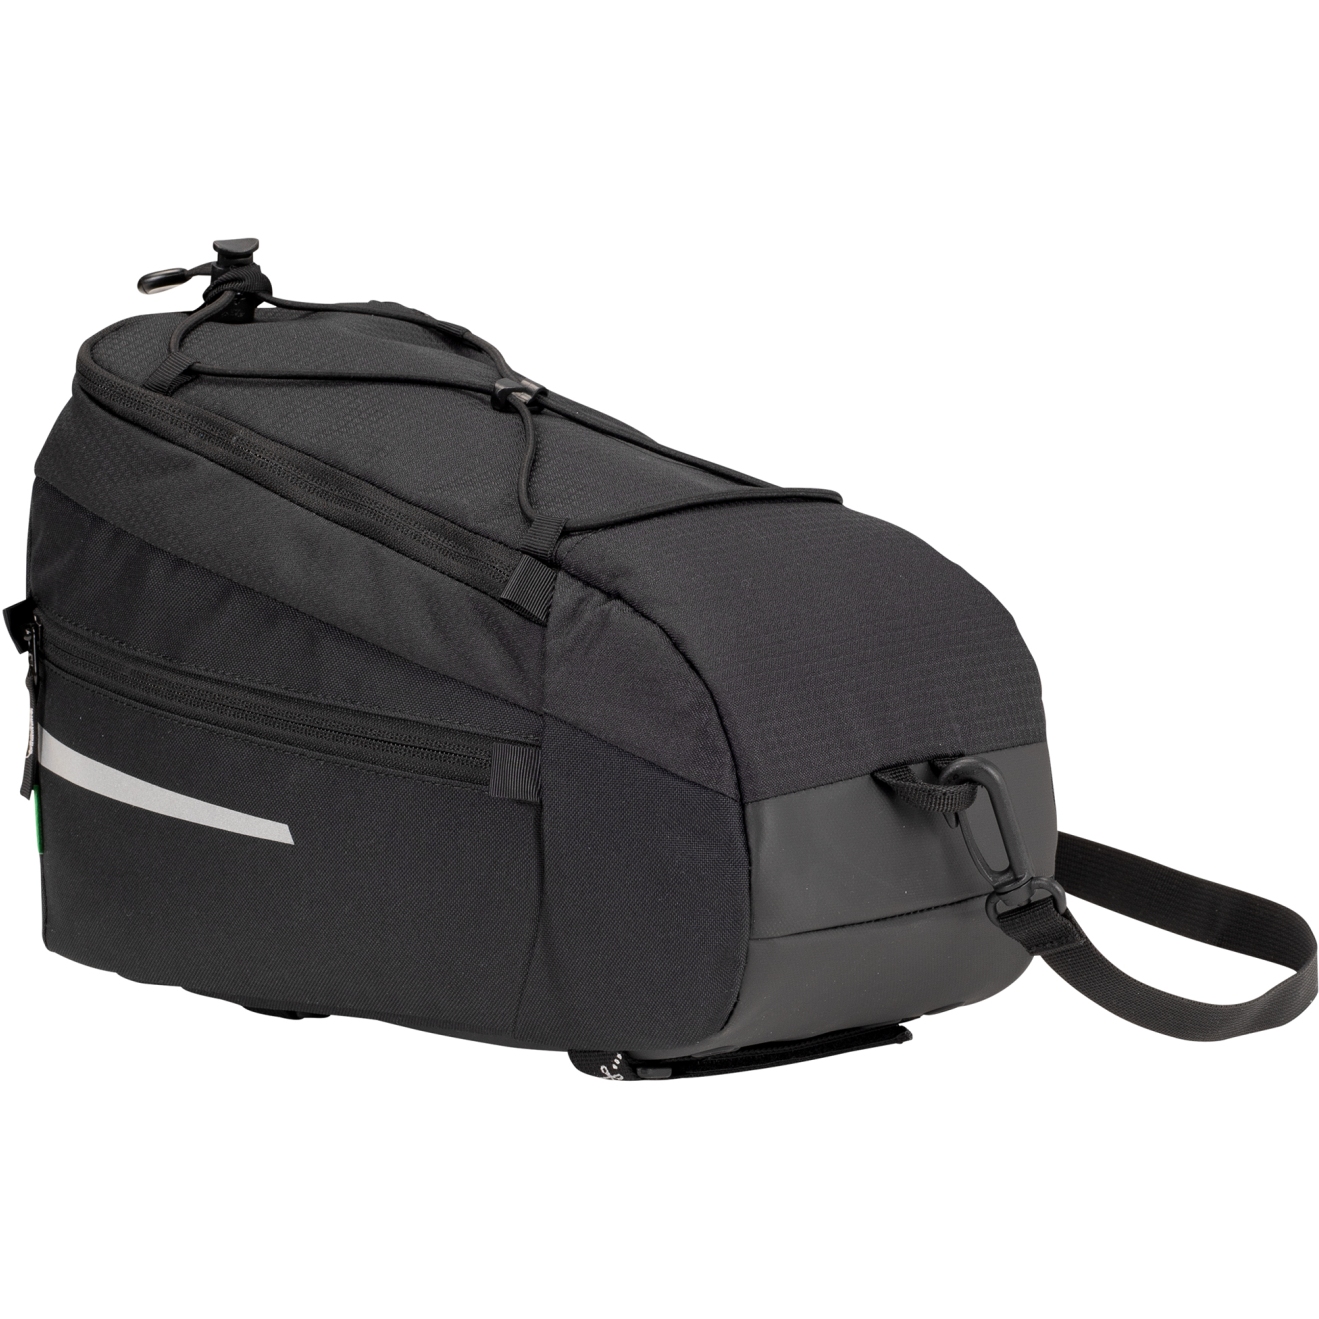 Produktbild von Vaude Silkroad M Gepäckträgertasche 7L - schwarz